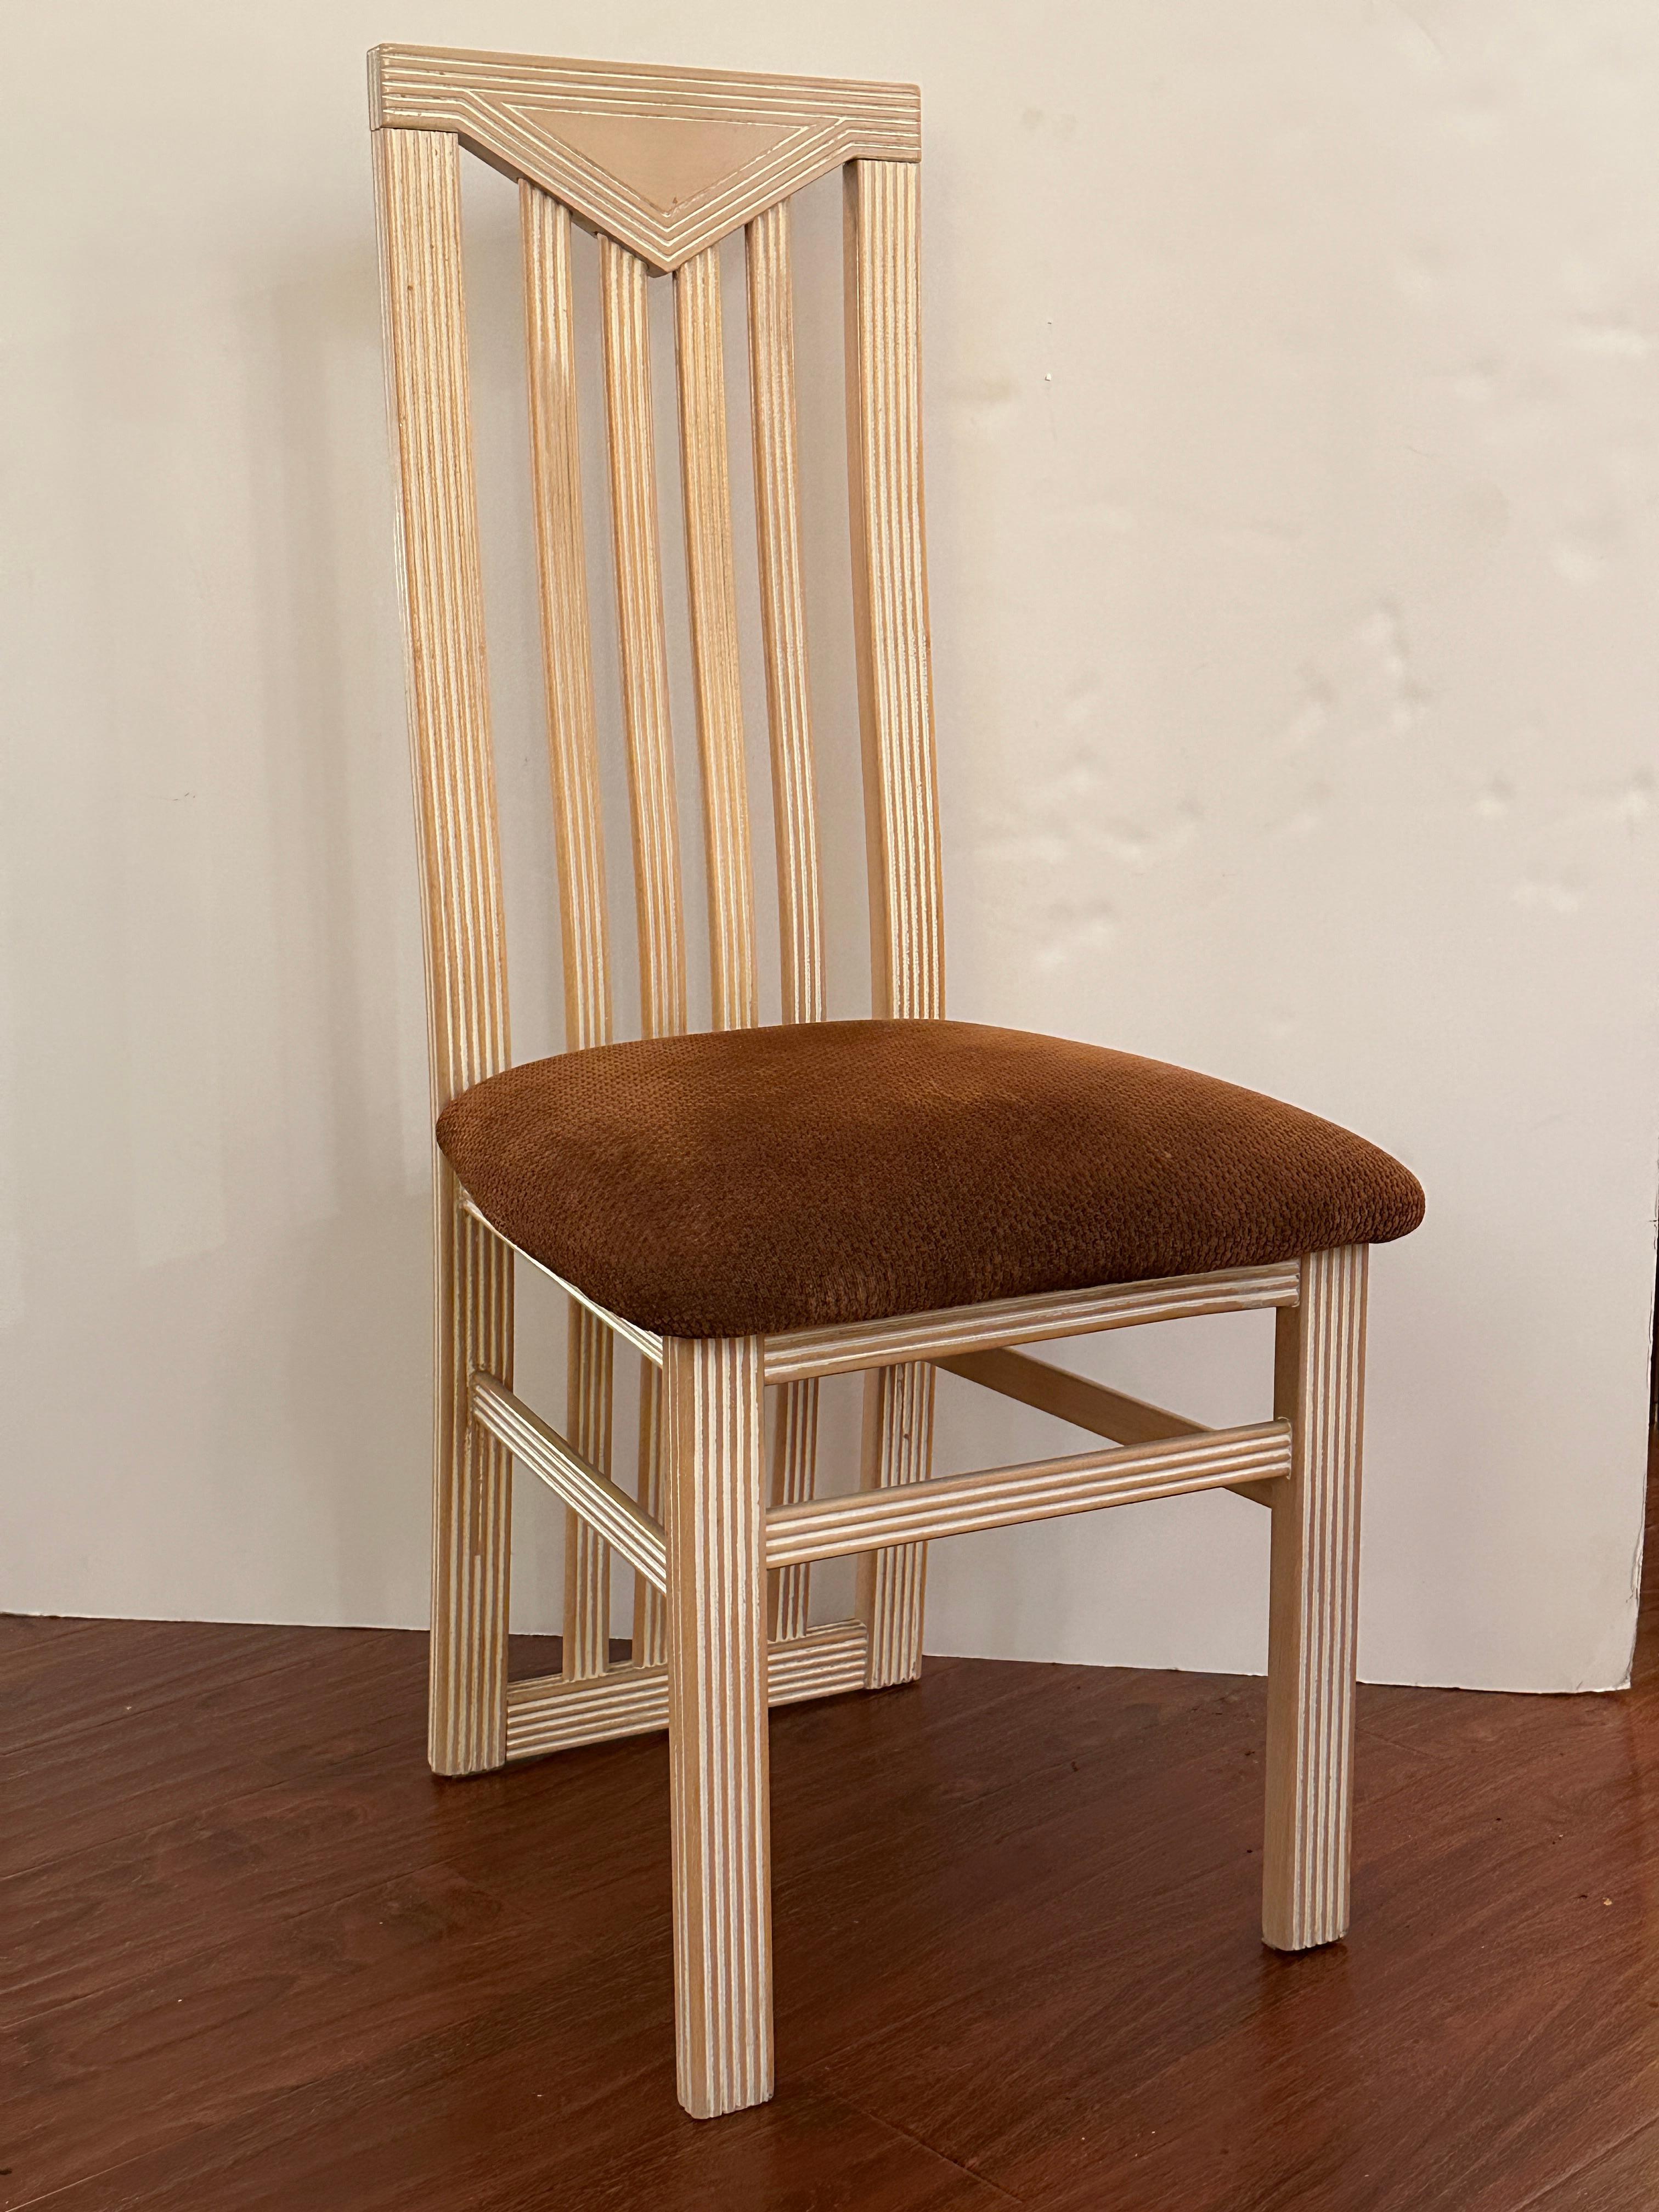 Dieses Set aus vier Stühlen mit hoher Rückenlehne wurde in sorgfältiger Handarbeit hergestellt und ist in einem eleganten weißen Holzton lackiert. Die Stühle sind mit rostfarbenem Samtstoff bezogen, der die weiß lackierte Holzoberfläche ergänzt.